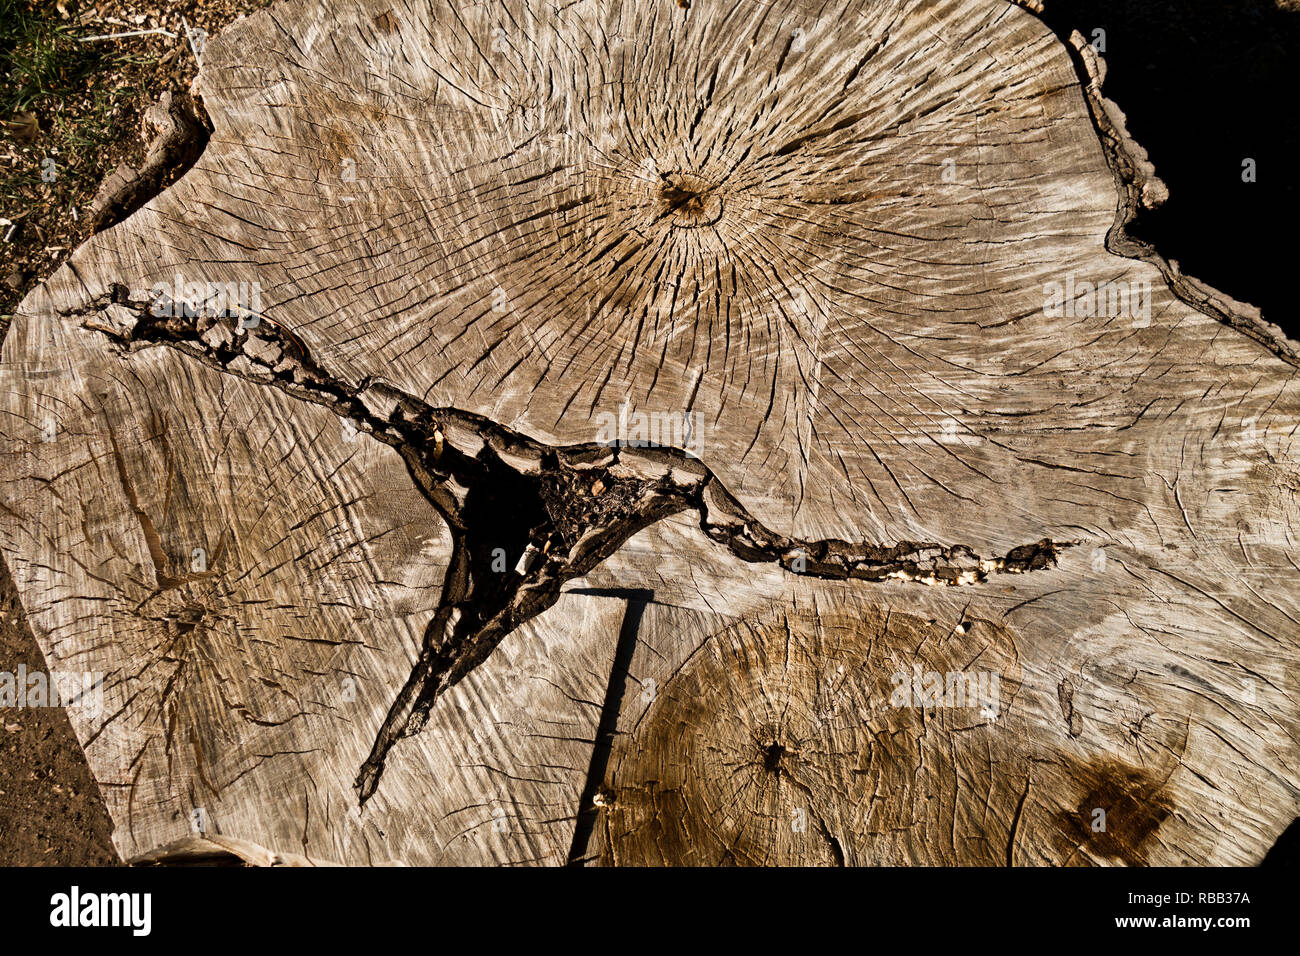 Schneiden Baum mit Baum Ringe sichtbar, für die Datierung der Baum alter verwendet Stockfoto